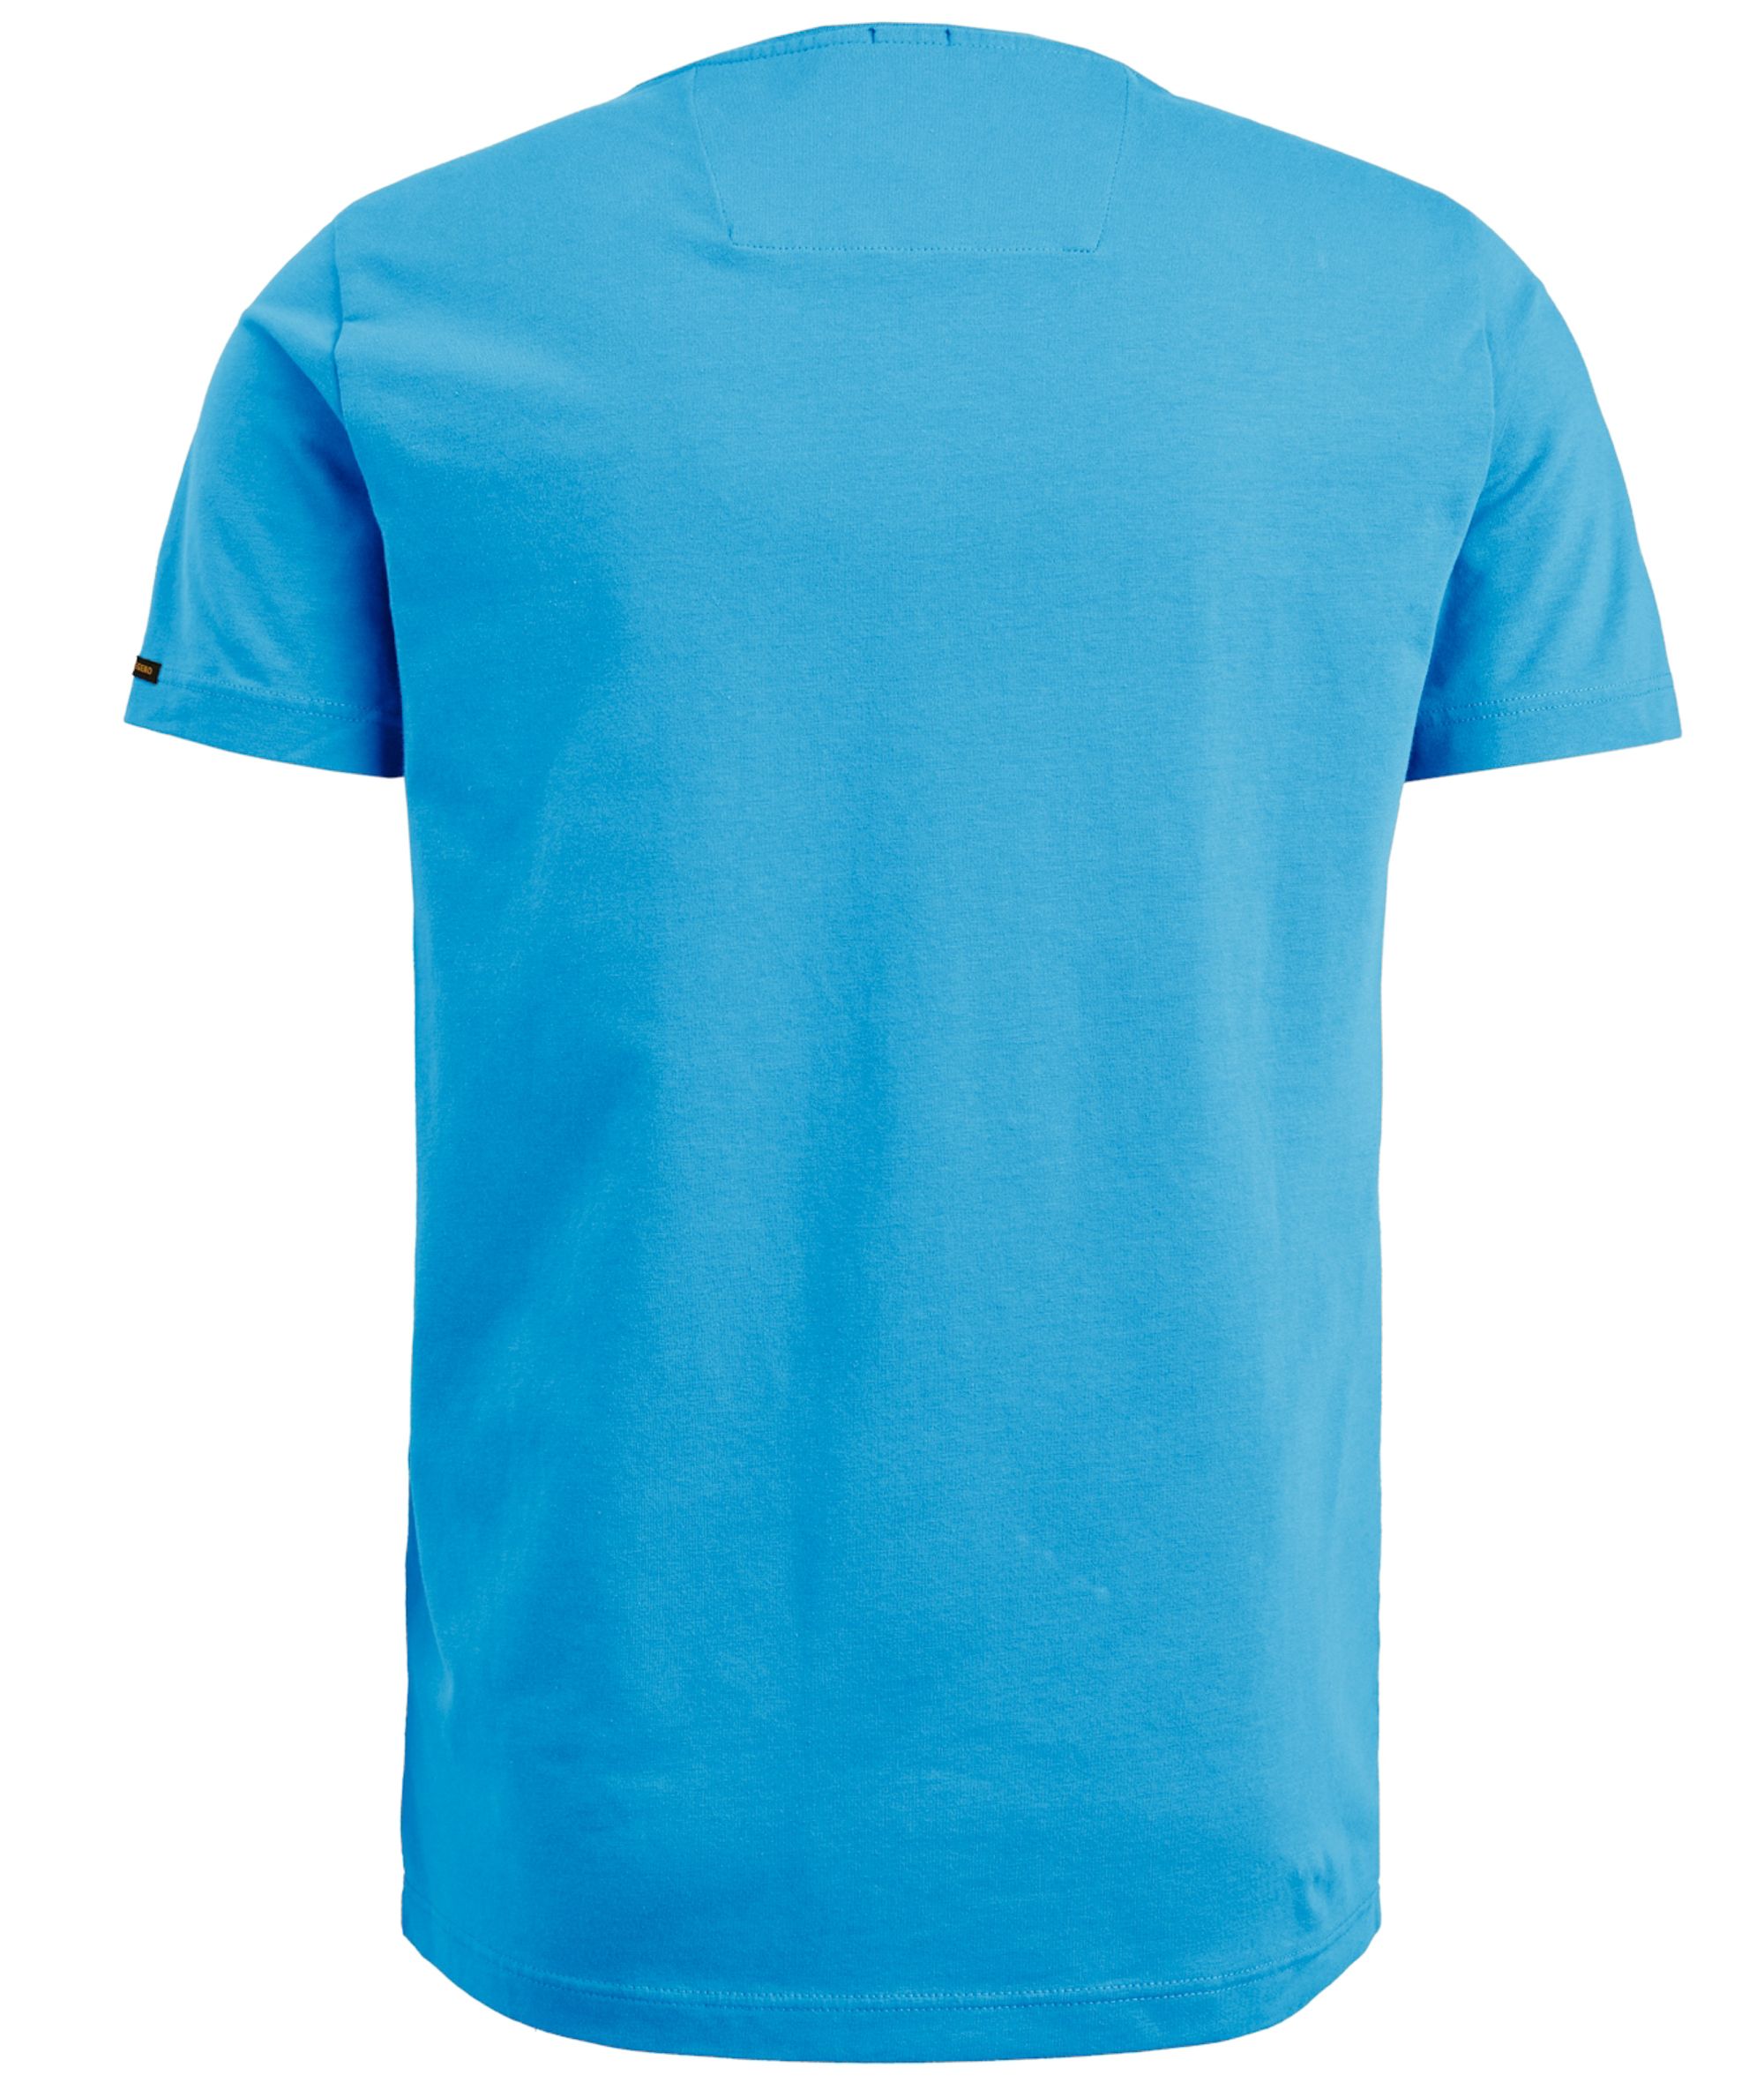 PME Legend T-shirt KM Blauw 085442-001-L